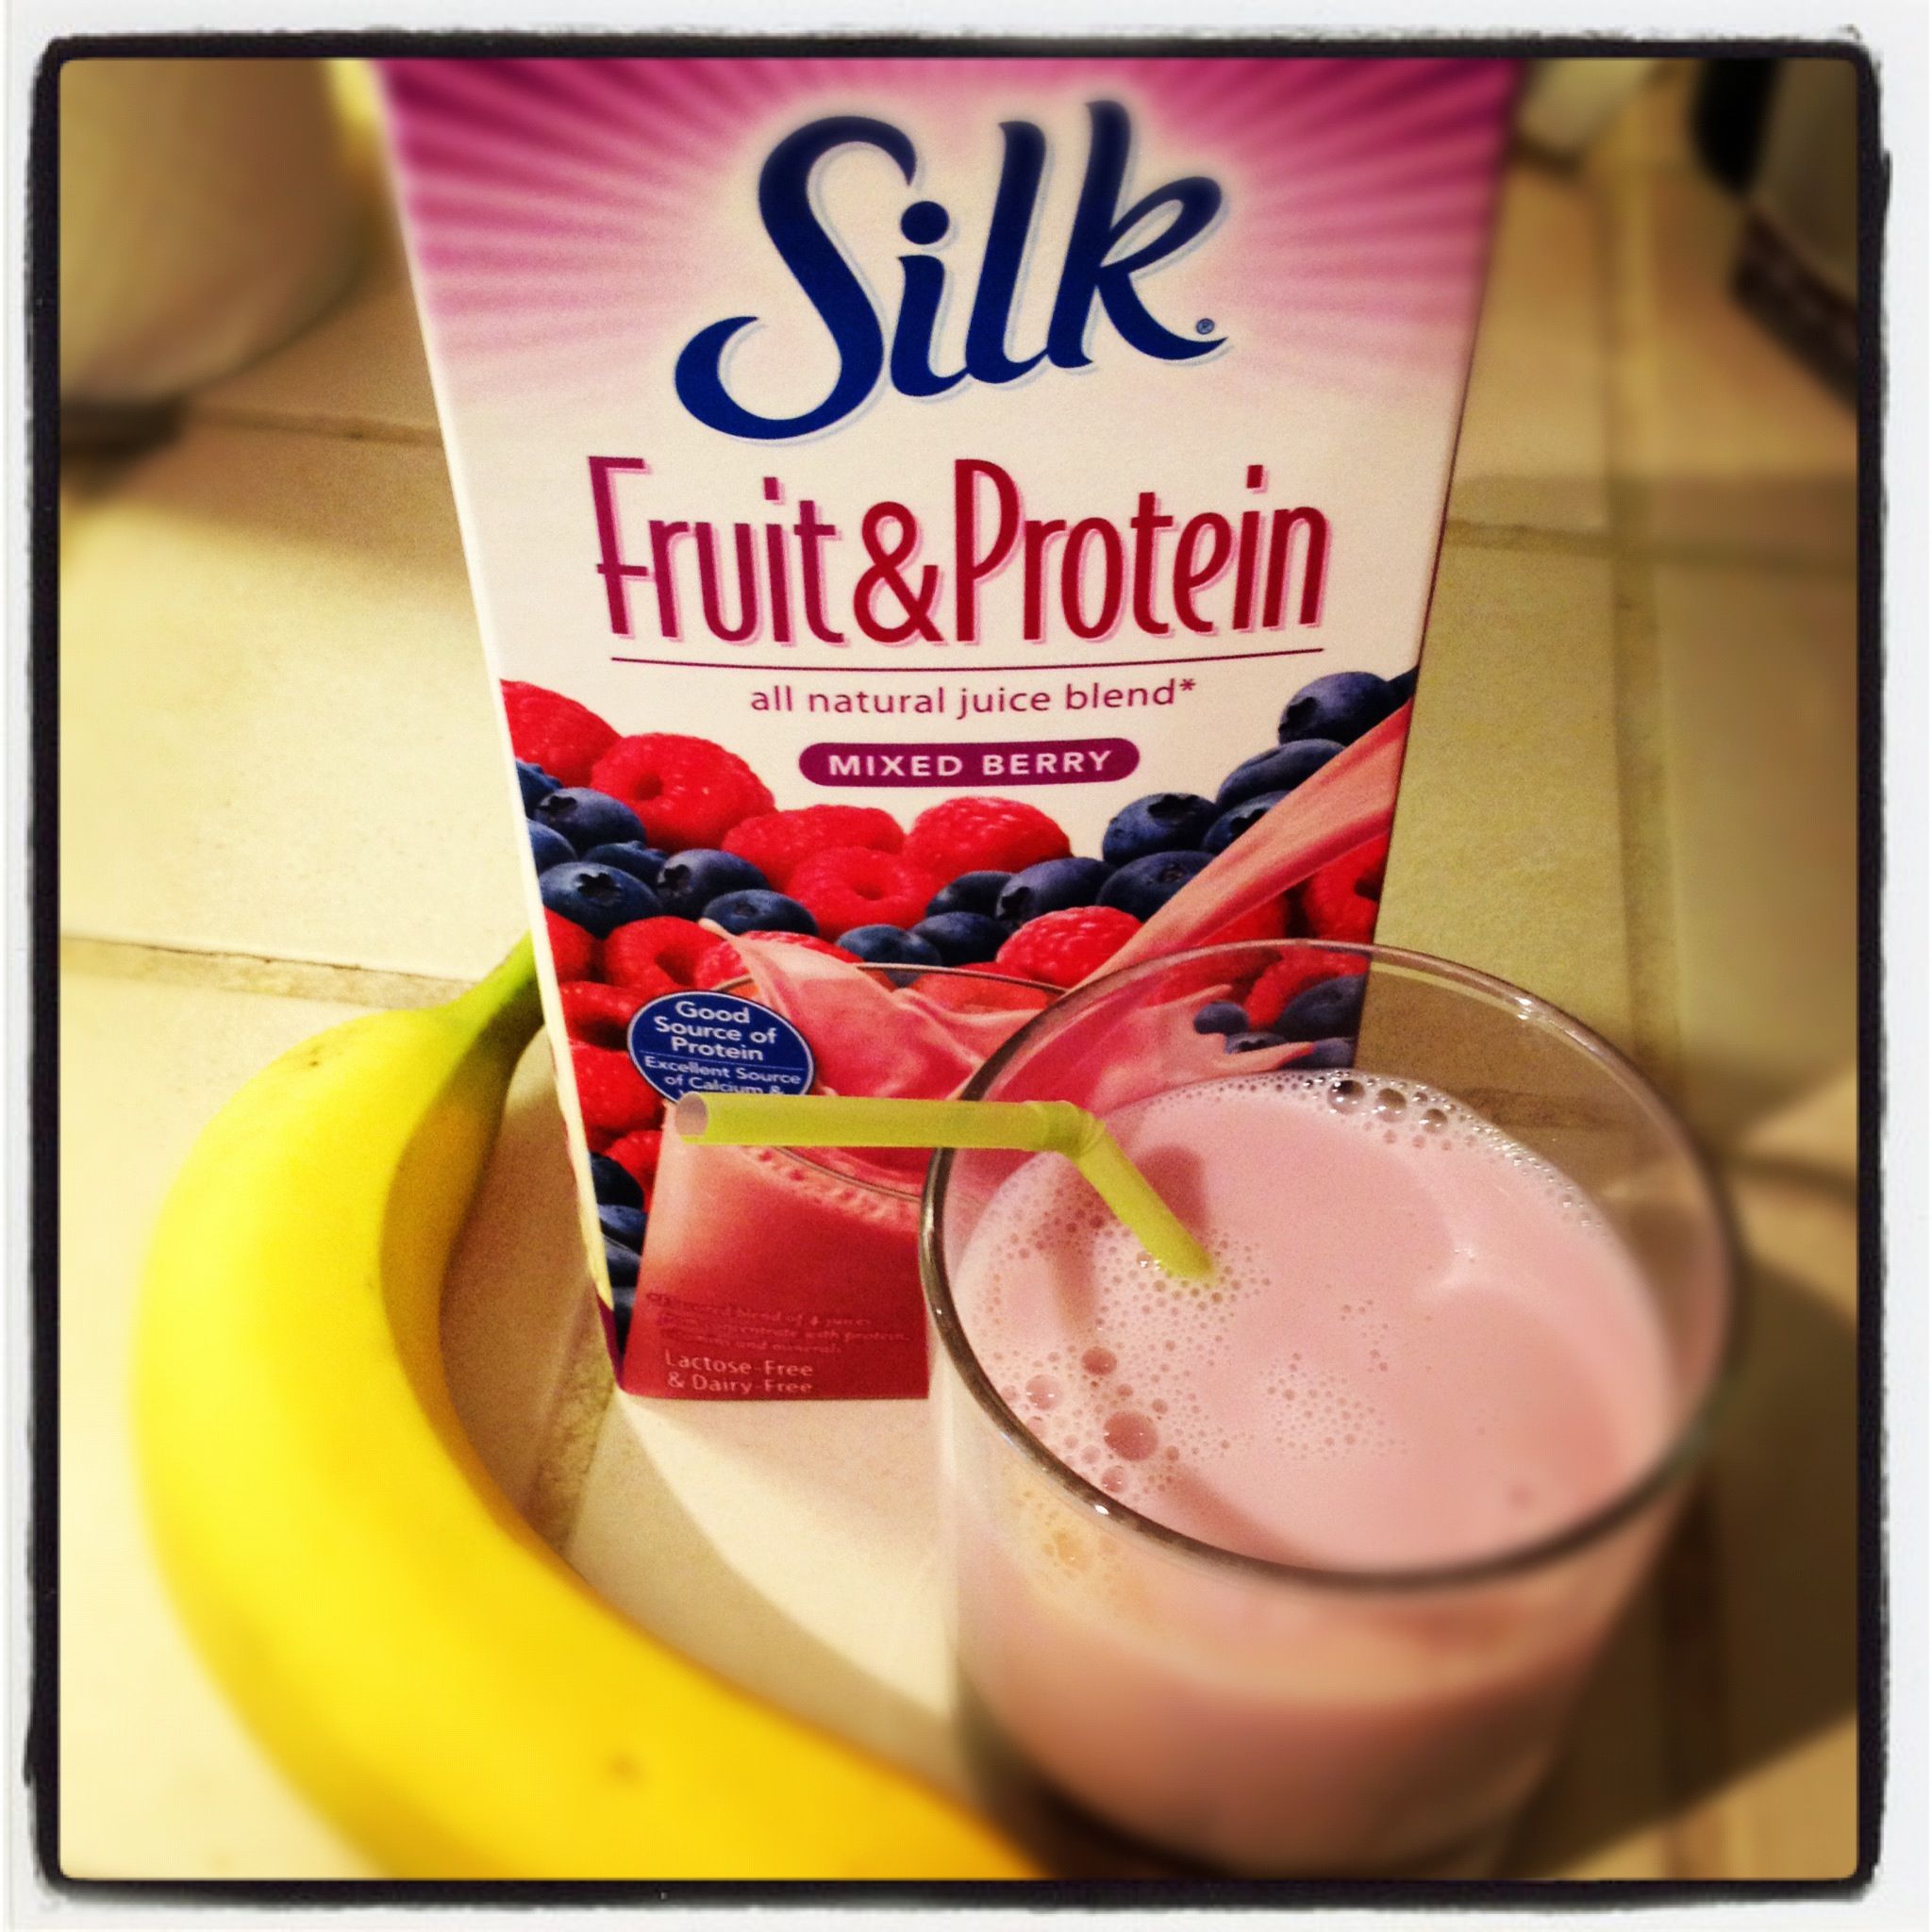 Silk Fruit&Protein Healthy Breakfast Campaign #SilkFruit #CBias